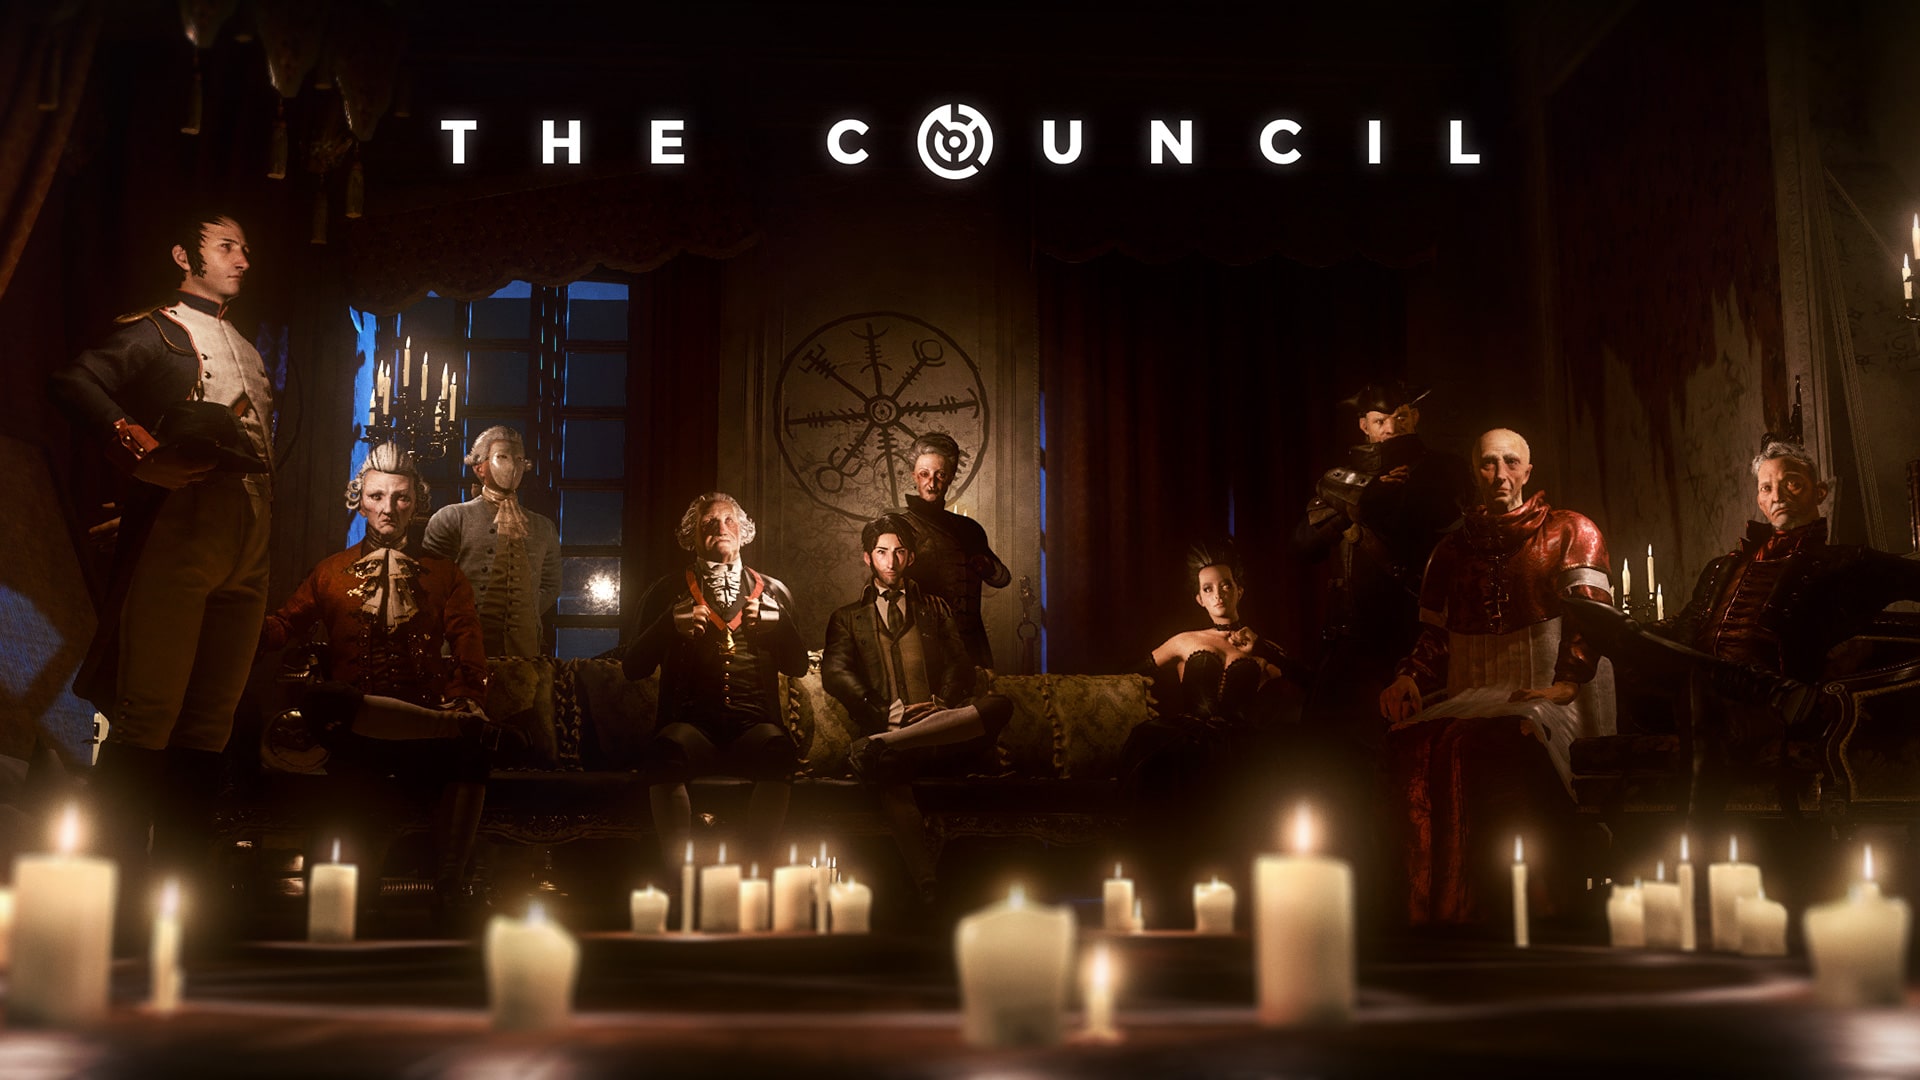 Die erste Episode von The Council ist jetzt auf der Xbox One verfügbar.